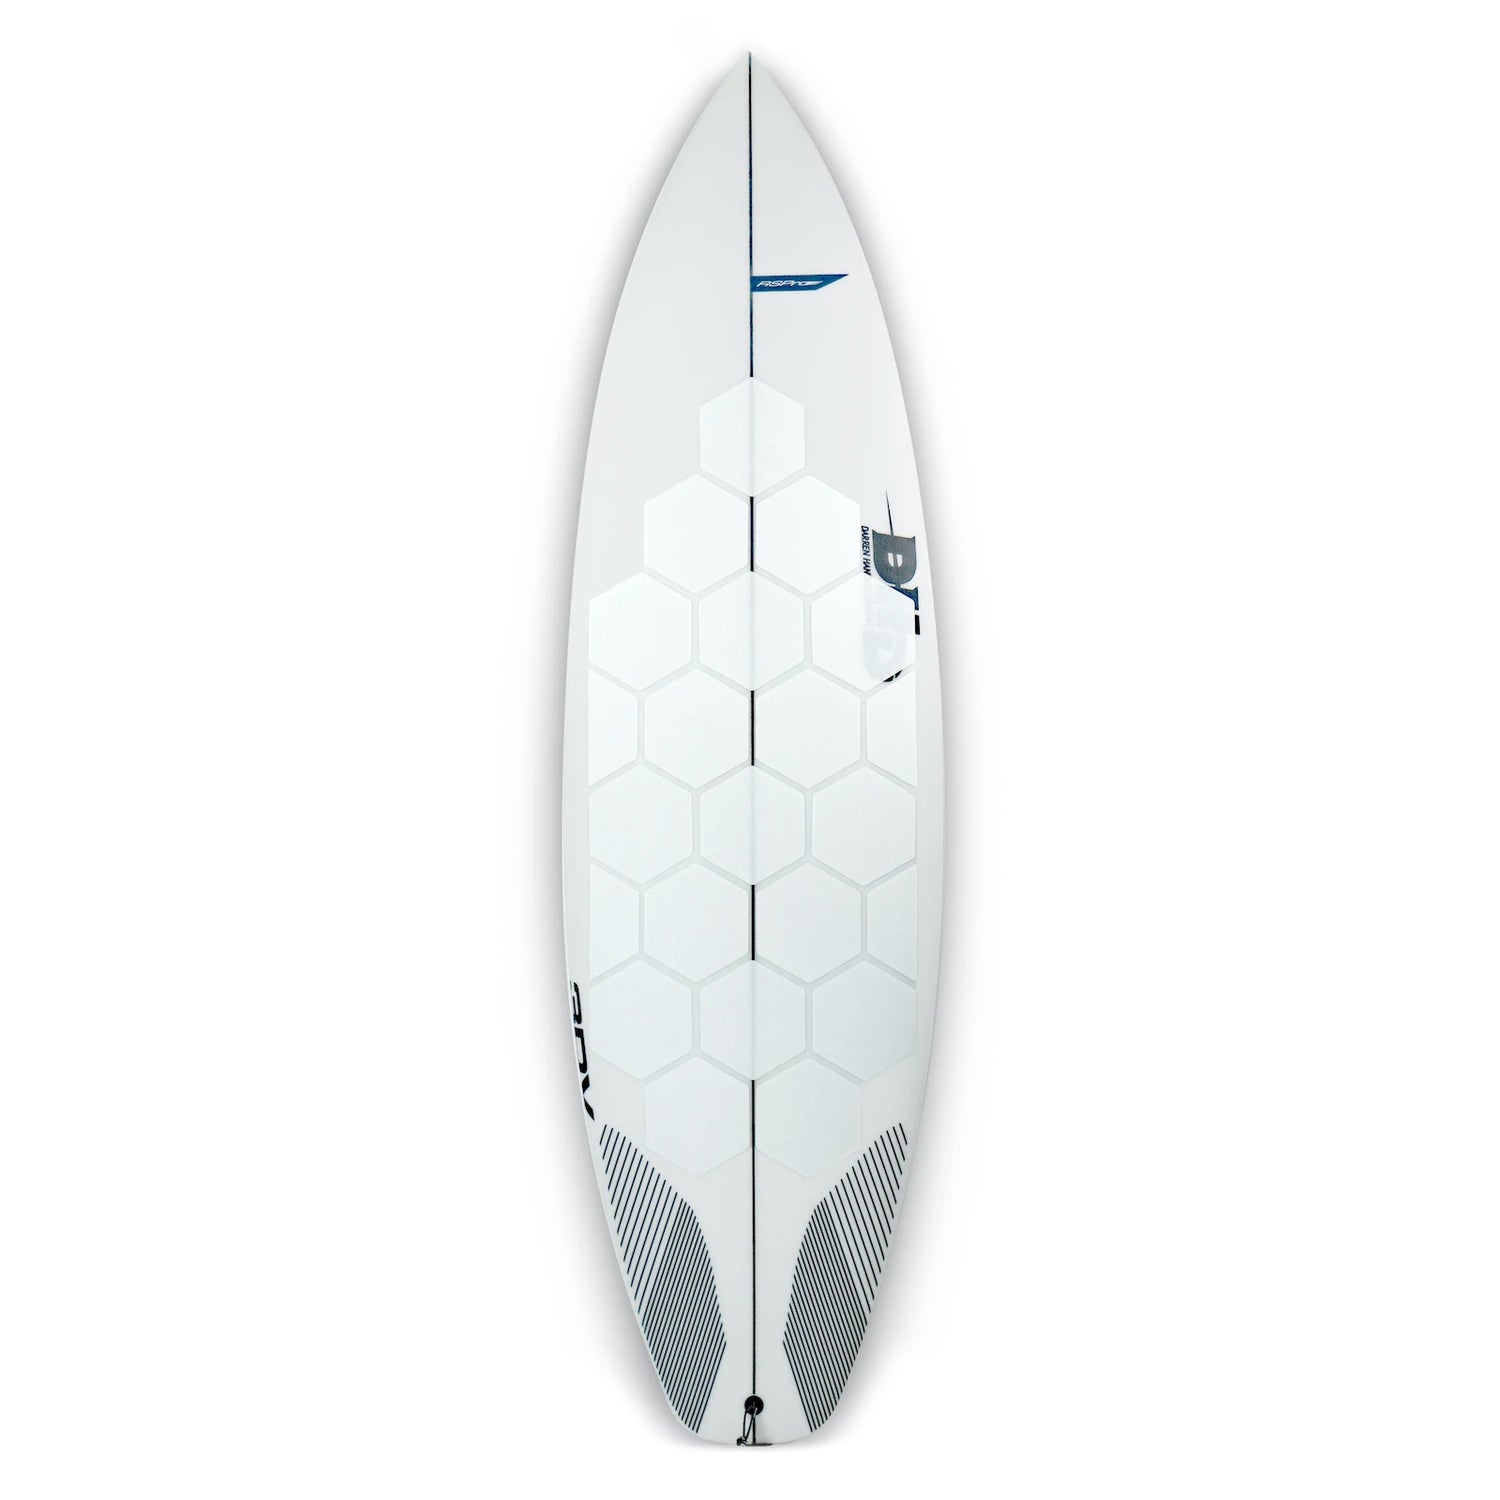 Installierte RSPro Hexa Traction White Edition auf einen Surfboard vor weißem Hintergrund.